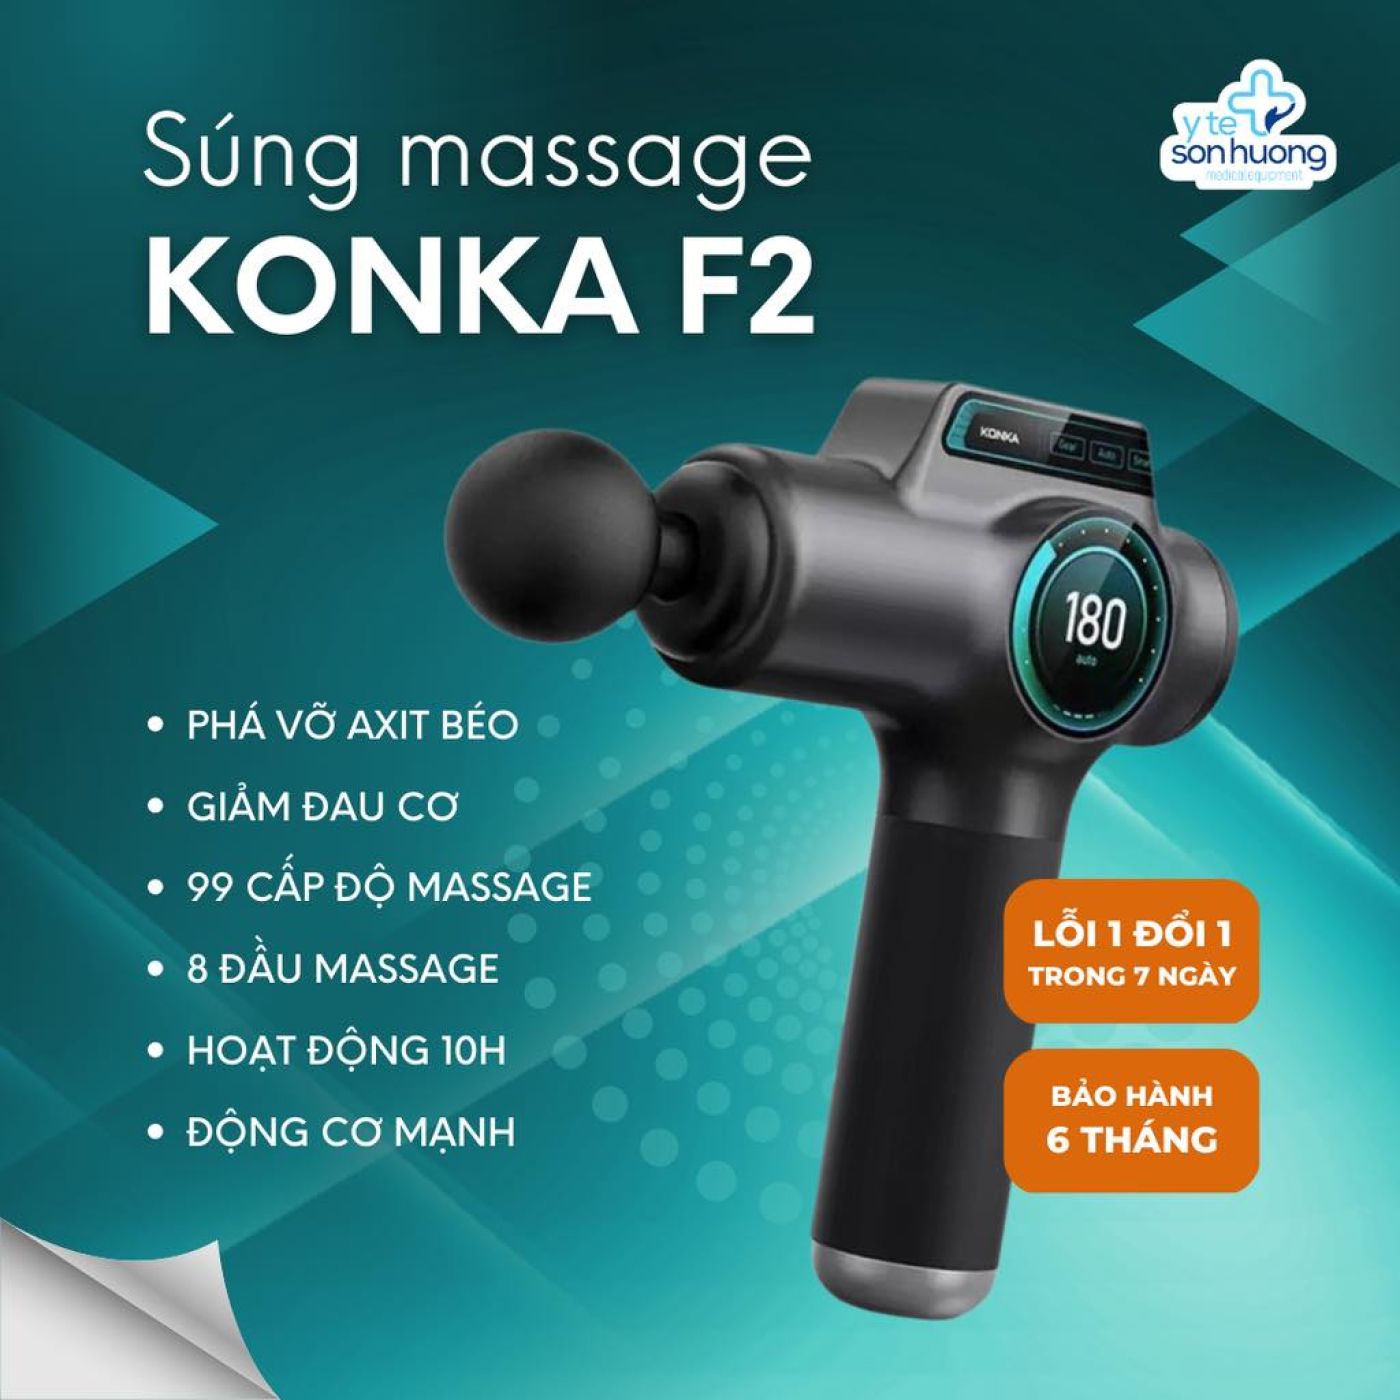 Máy massage cầm tay KONKA F2 chính hãng